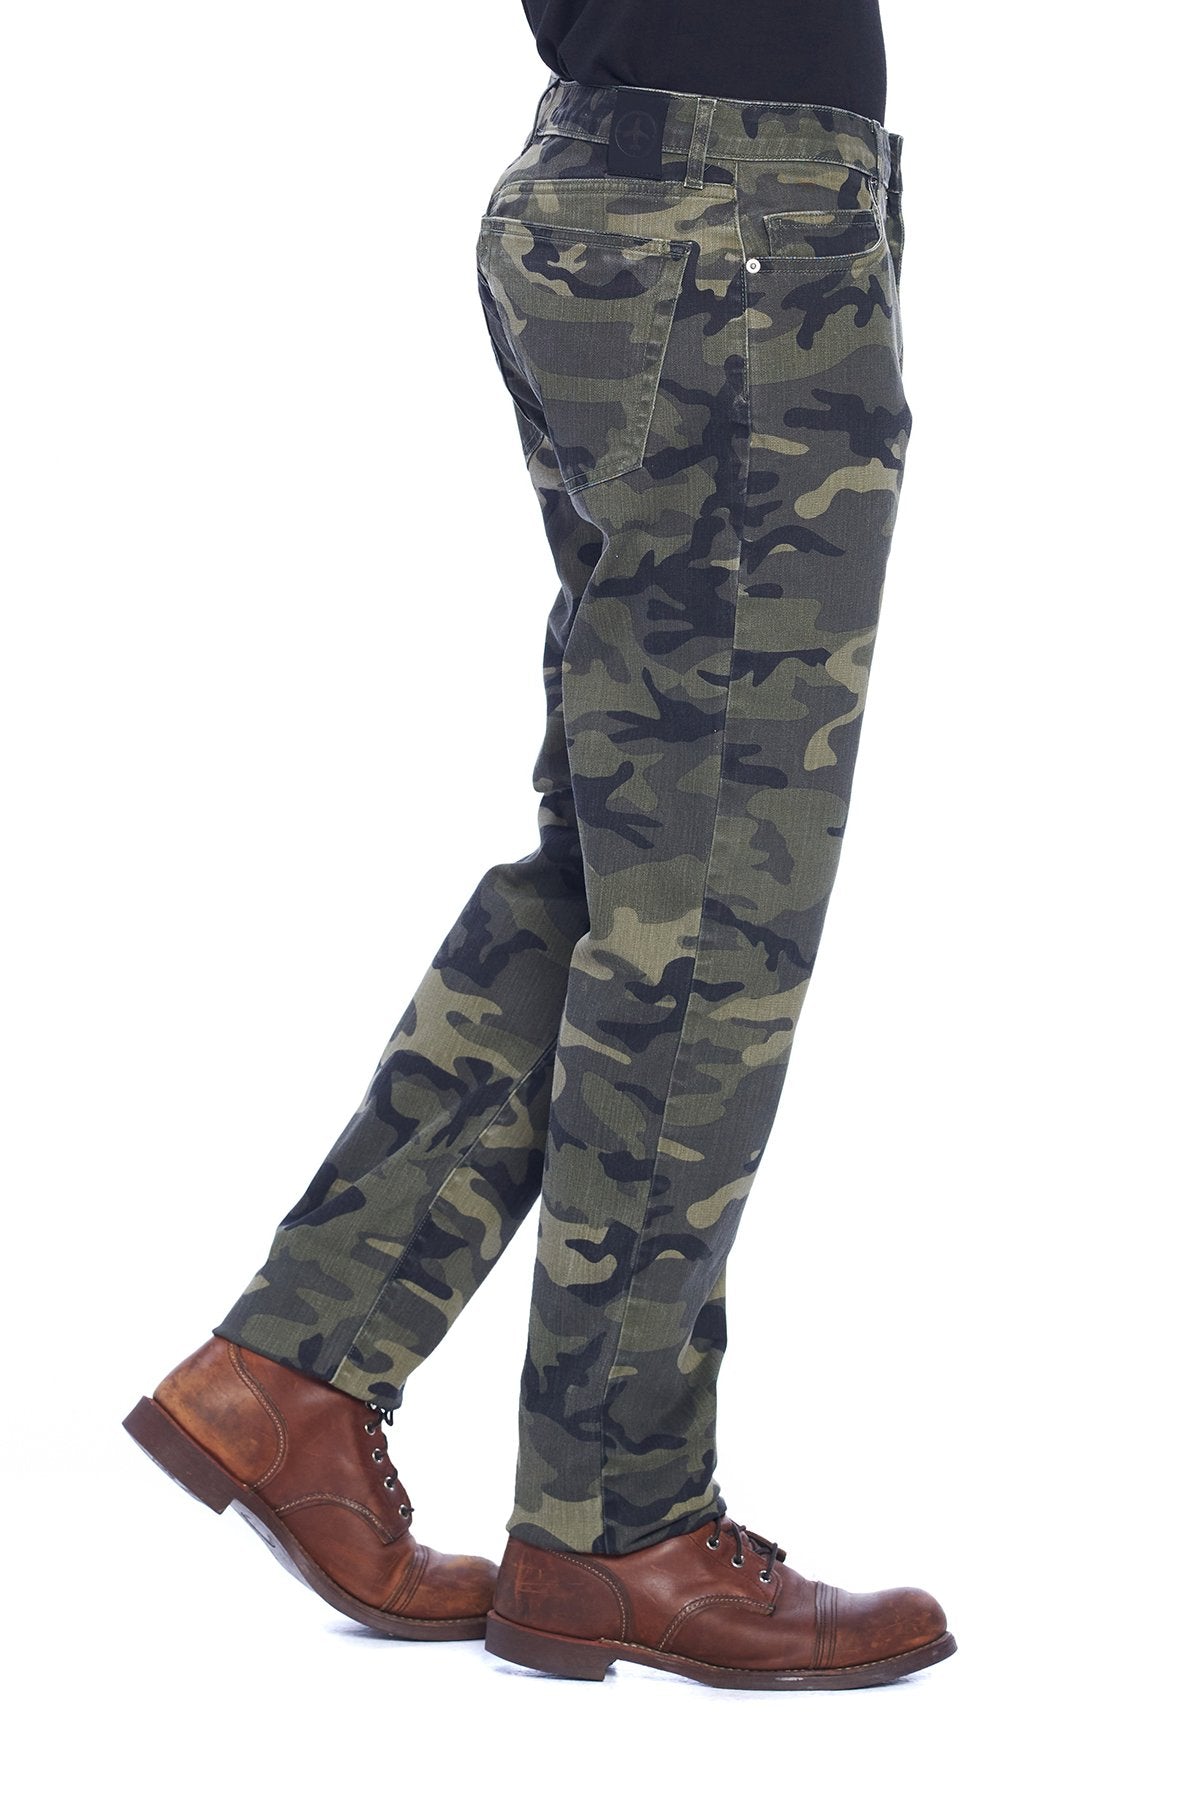 ShopVintageHQ Camouflage Pants